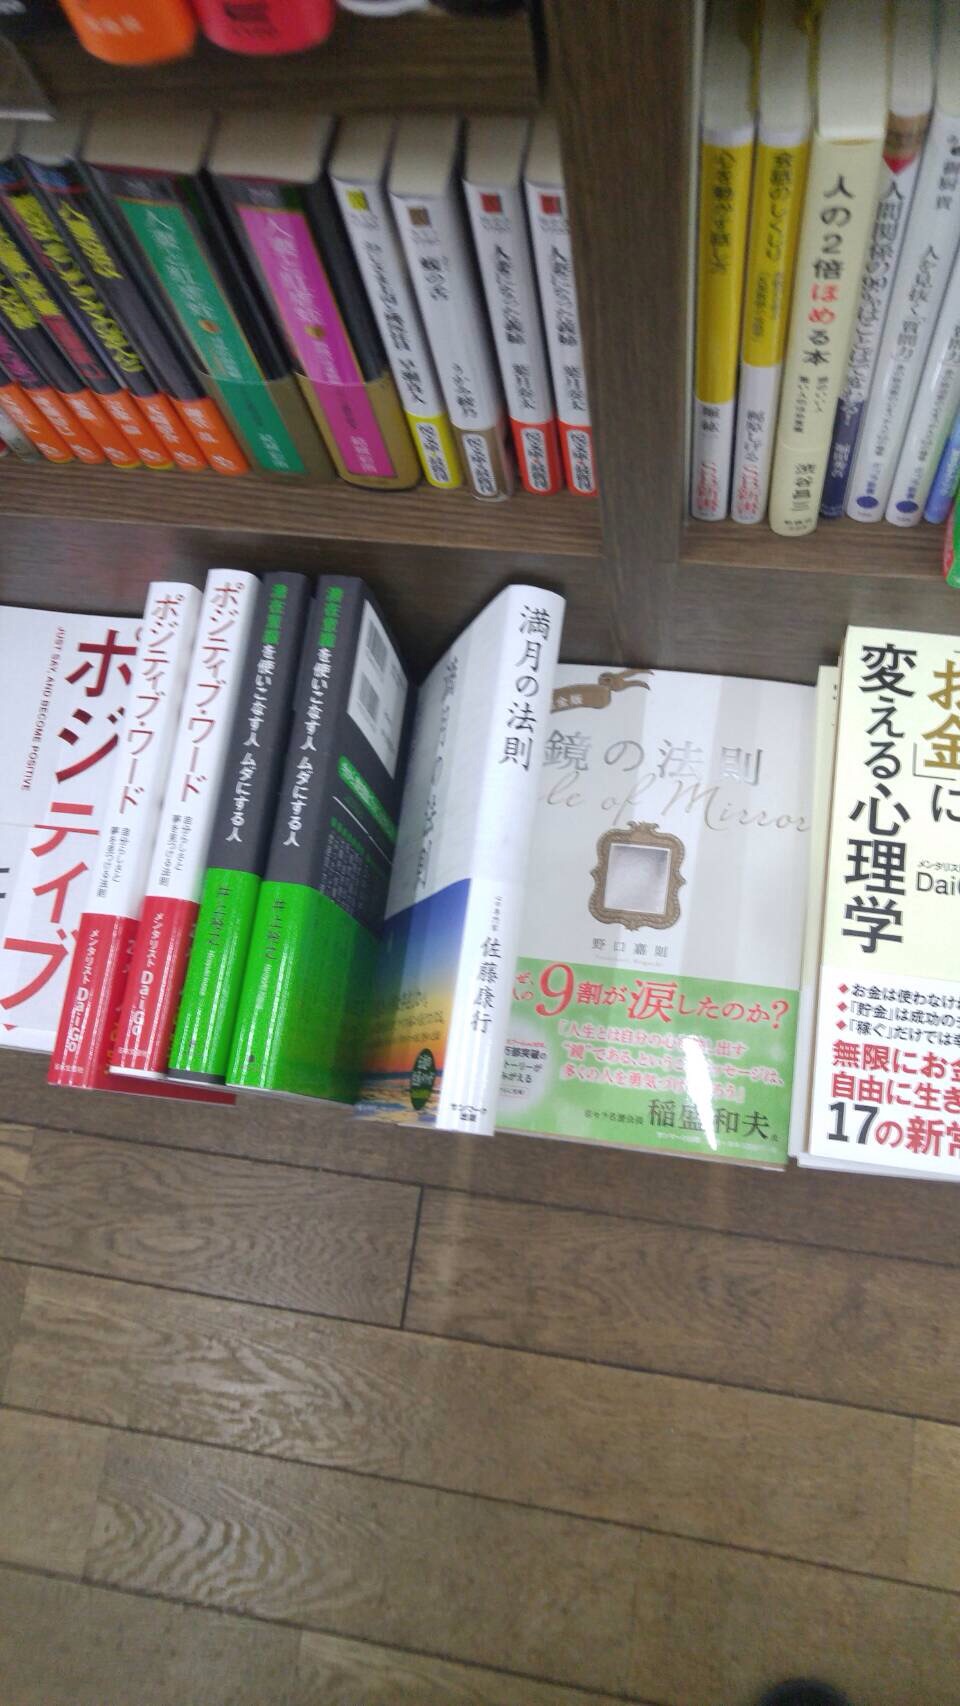 兵庫県神戸市の板宿の井戸書店書籍『満月の法則』